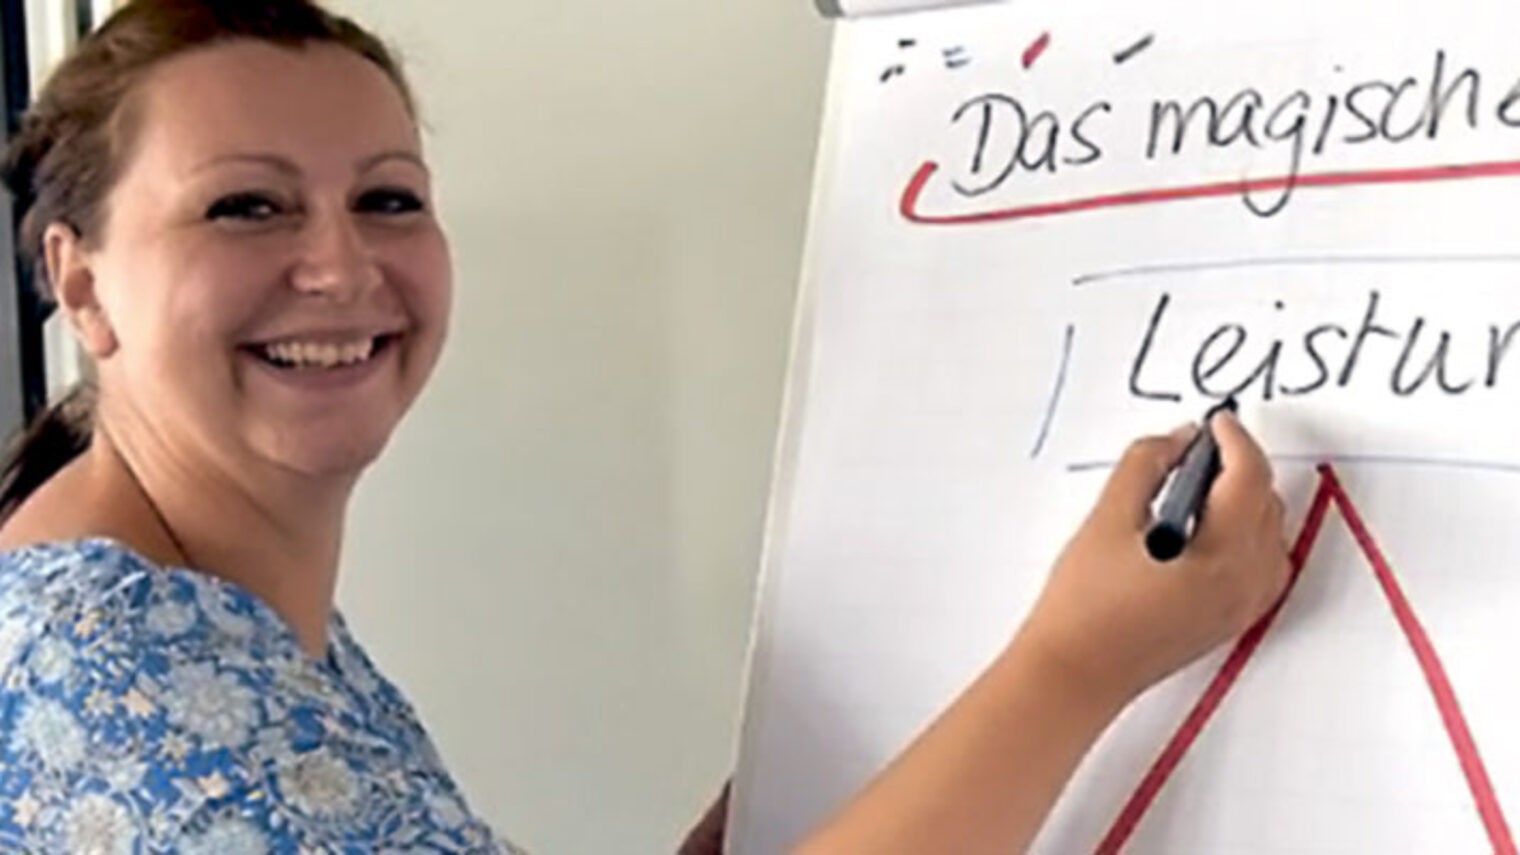 Augenoptikermeisterin Angelika Reiser aus Erlangen bildet sich in Würzburg in der Akademie für Unternehmensführung zur Betriebswirtin weiter, weil sie in die Geschäftsleitung einsteigen will. Dabei lernt sie auch das "Magische Dreieck" kennen, ein wichtiges Instrument für Selbstständige.